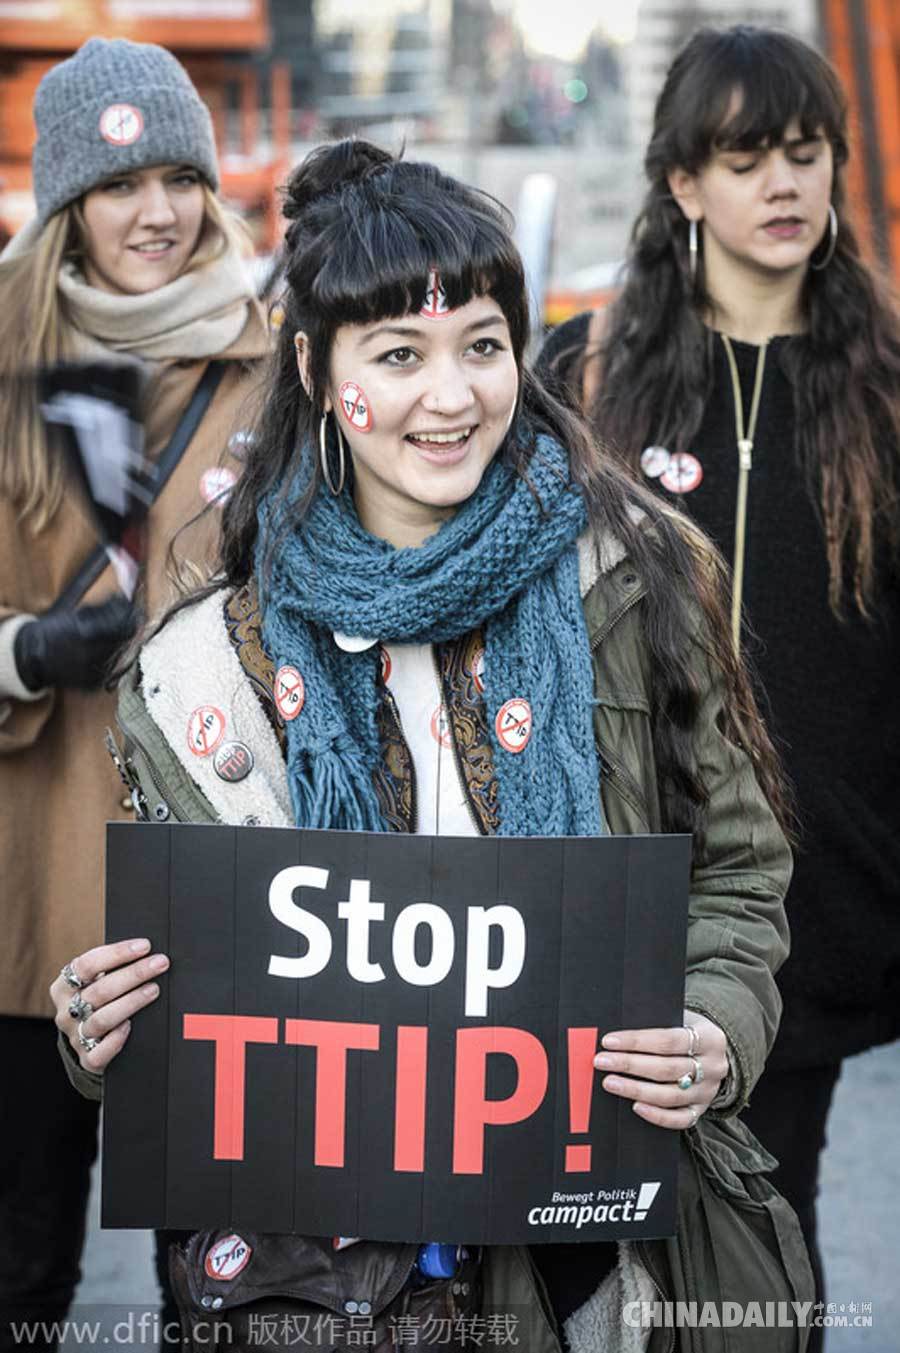 欧盟总部前惊现特洛伊木马 抗议TTIP协议